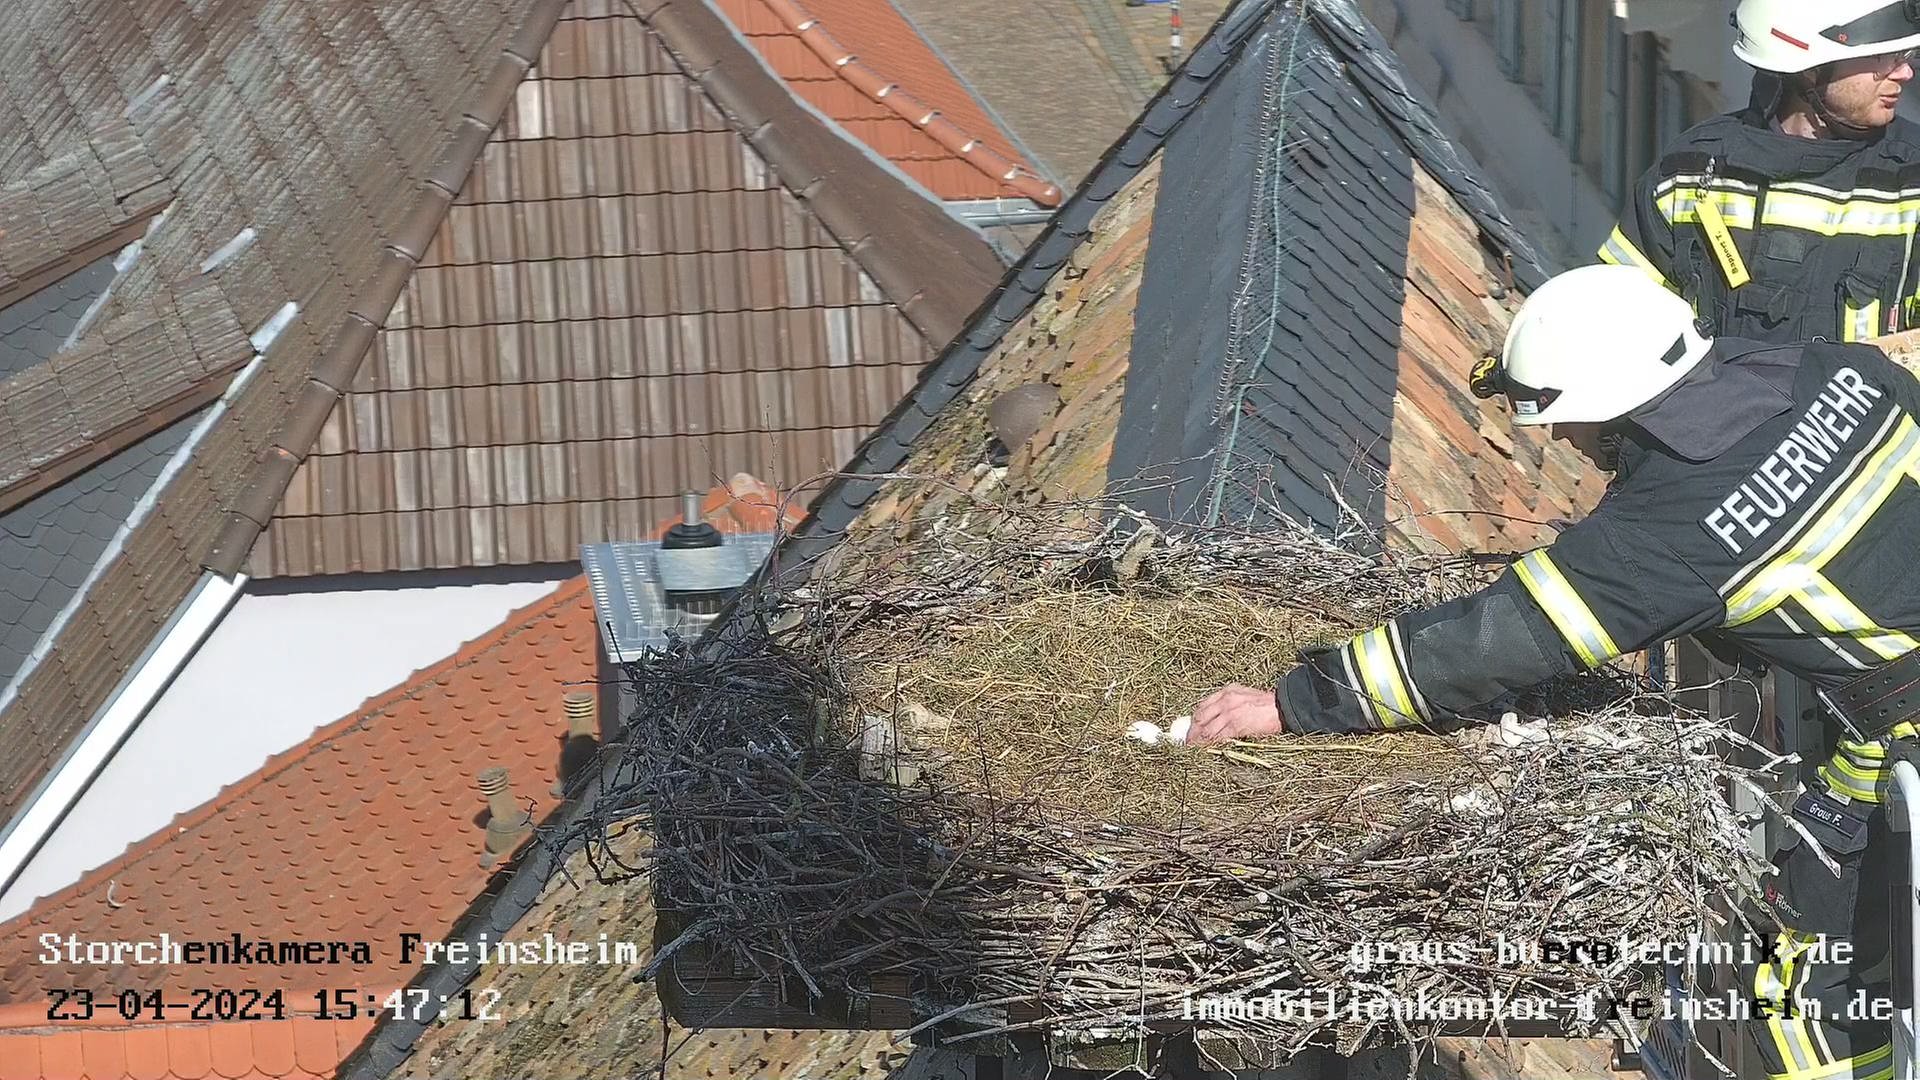 Feuerwehr in Freinsheim bringt vier Storcheneier zu Pflegeeltern